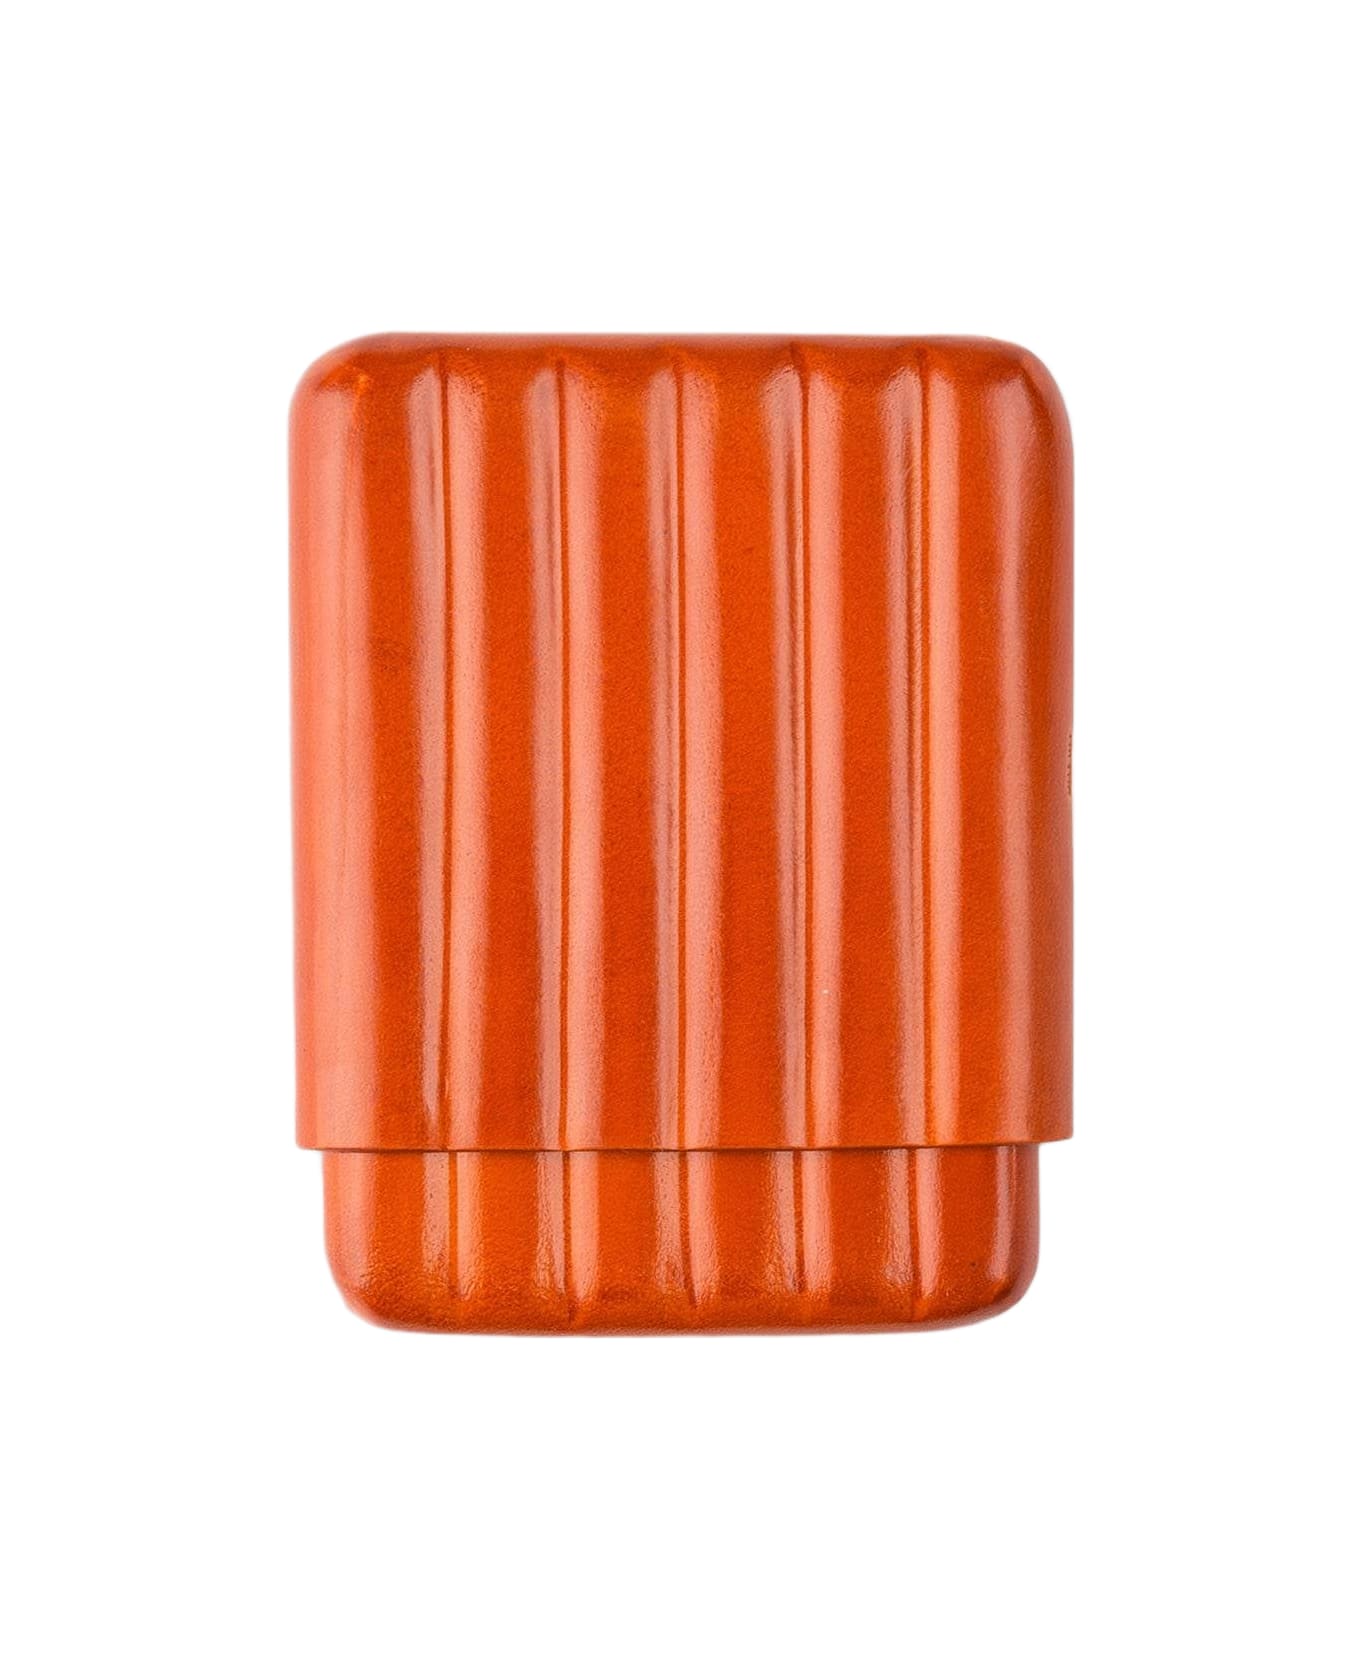 Larusmiani Cigarette Case Cover  - Orange